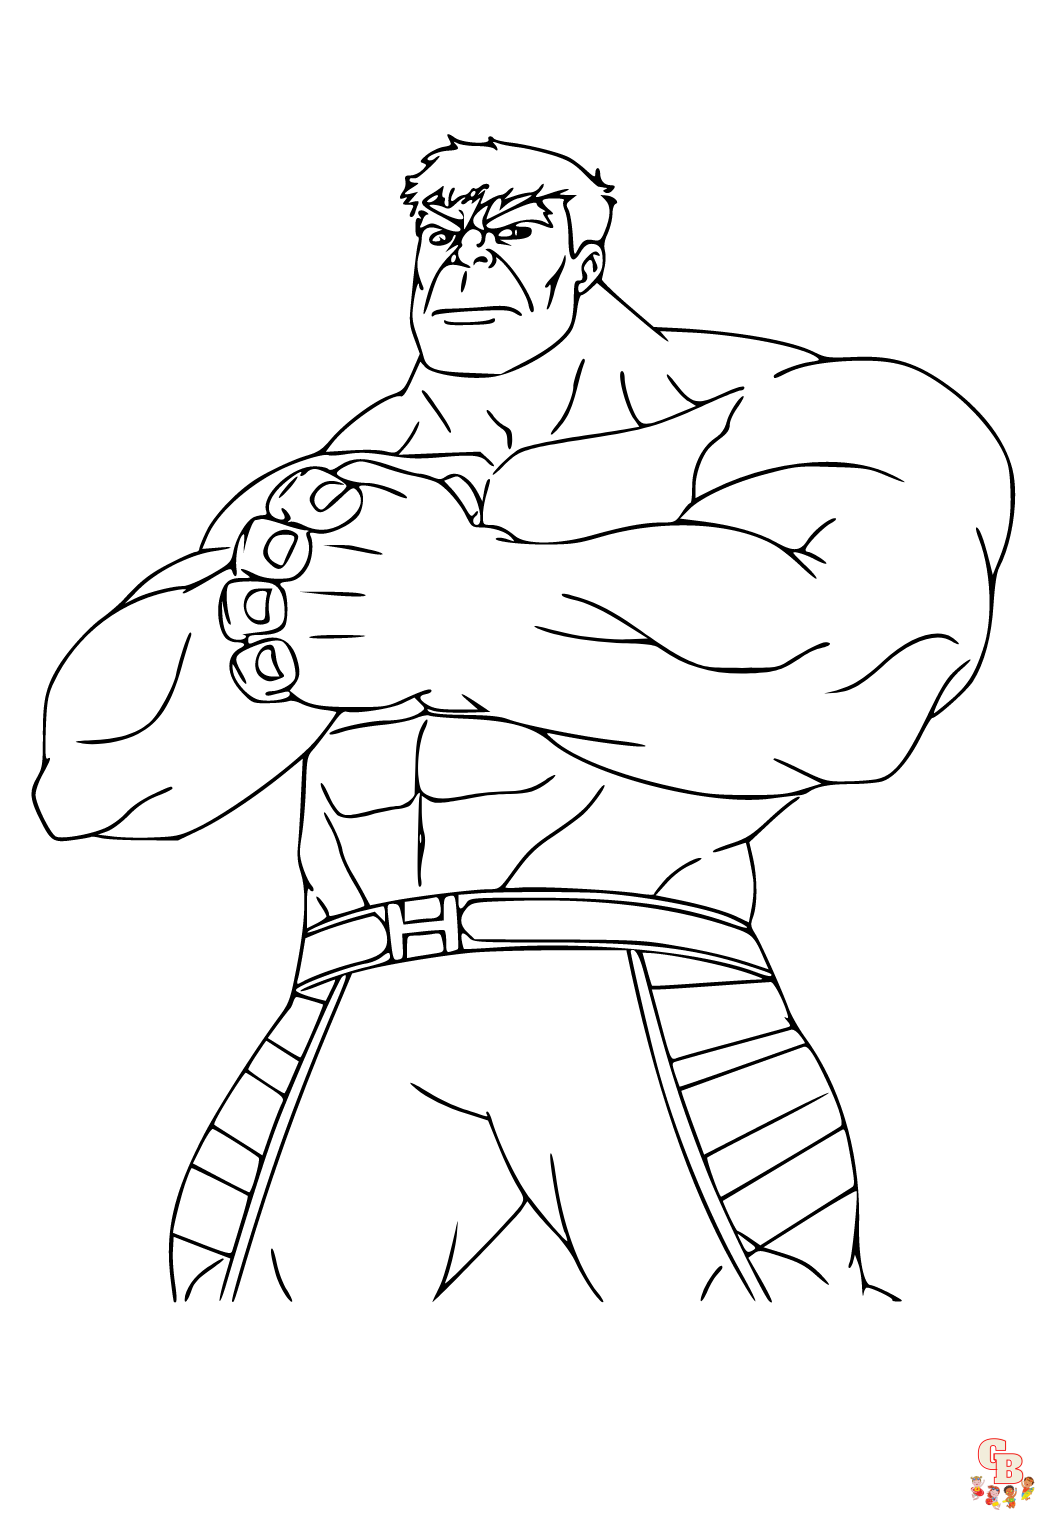 Coloriage Hulk Les avantages pour les enfants et les meilleurs dessins à colorier